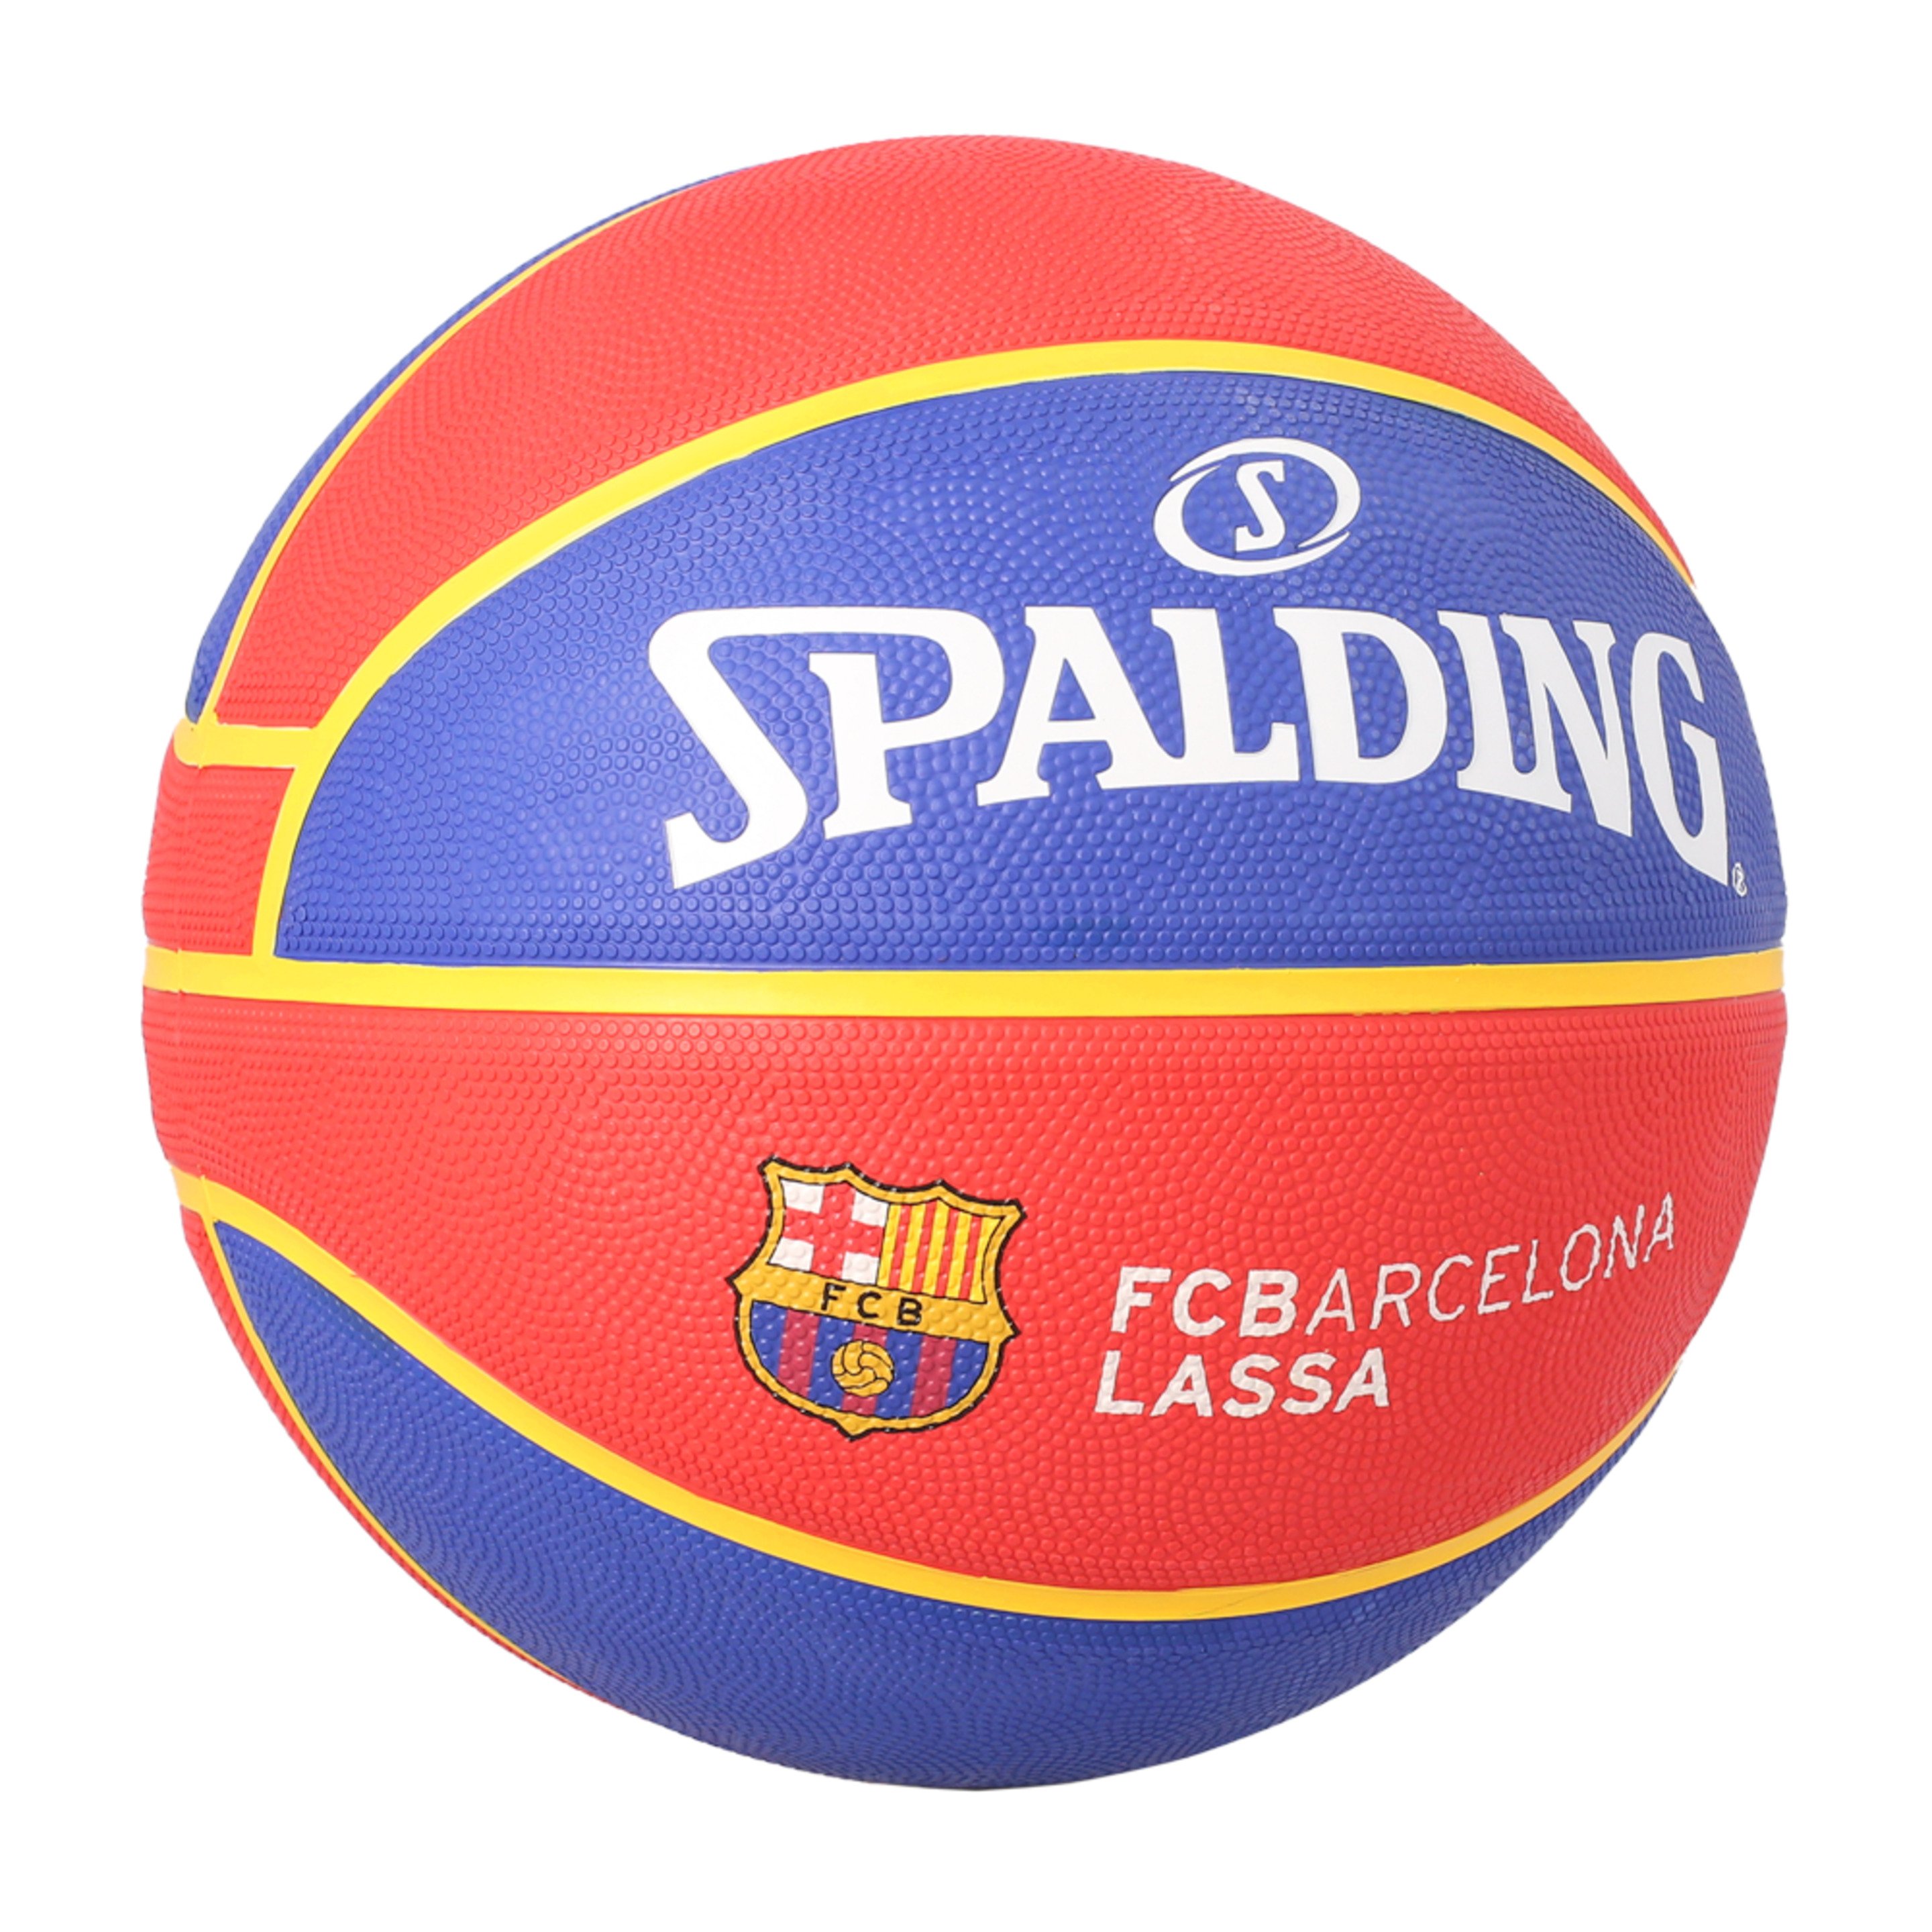 Spalding Fc Barcelona Euroleague Basquete Sz7 - Azul Claro/Vermelho | Sport Zone MKP